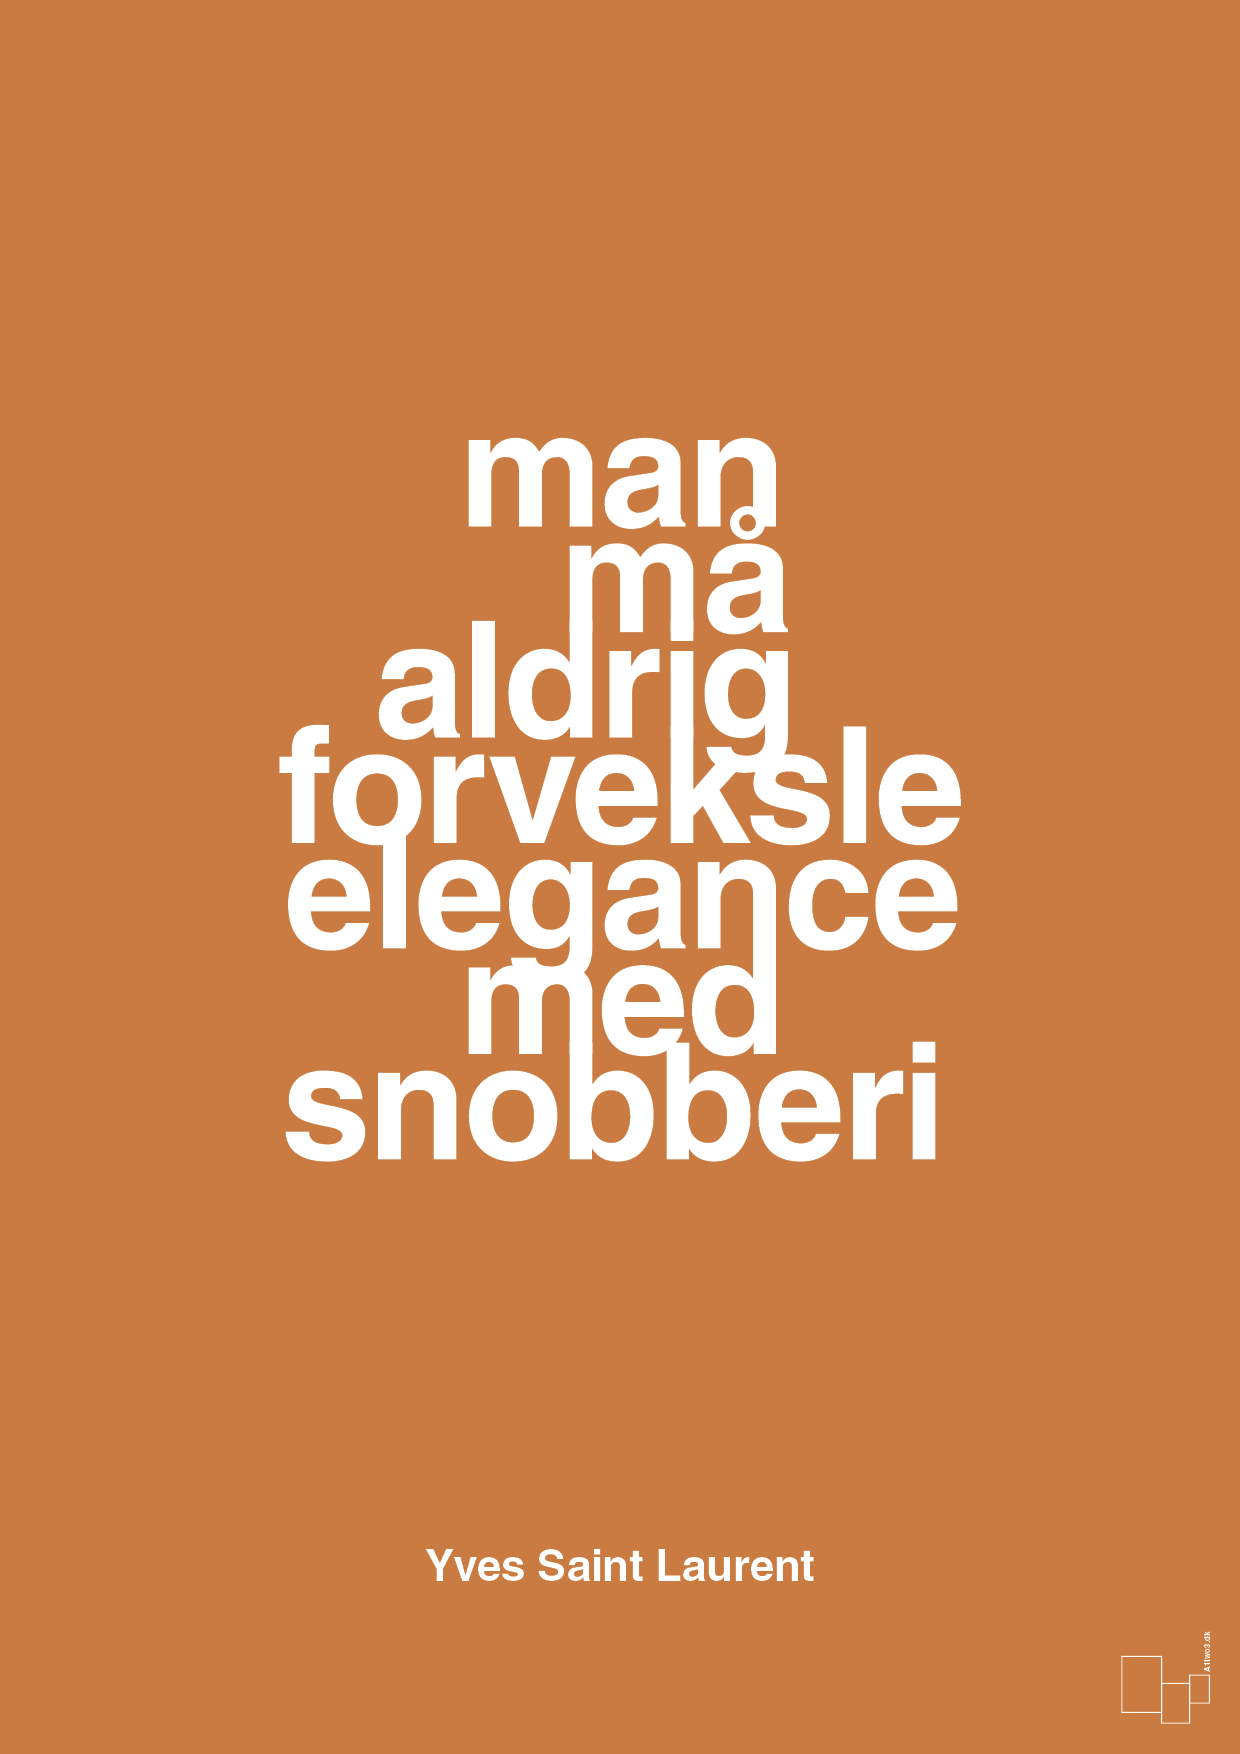 man må aldrig forveksle elegance med snobberi - Plakat med Citater i Rumba Orange